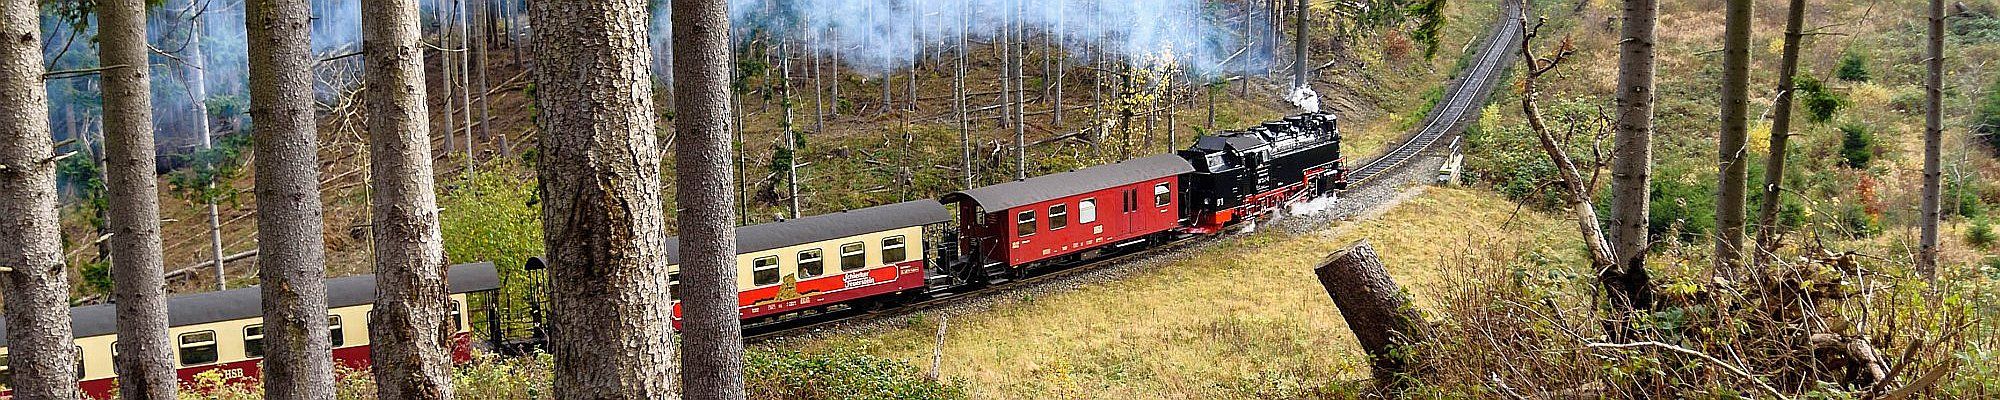 Harzer Schmalspurbahn © Pixabay